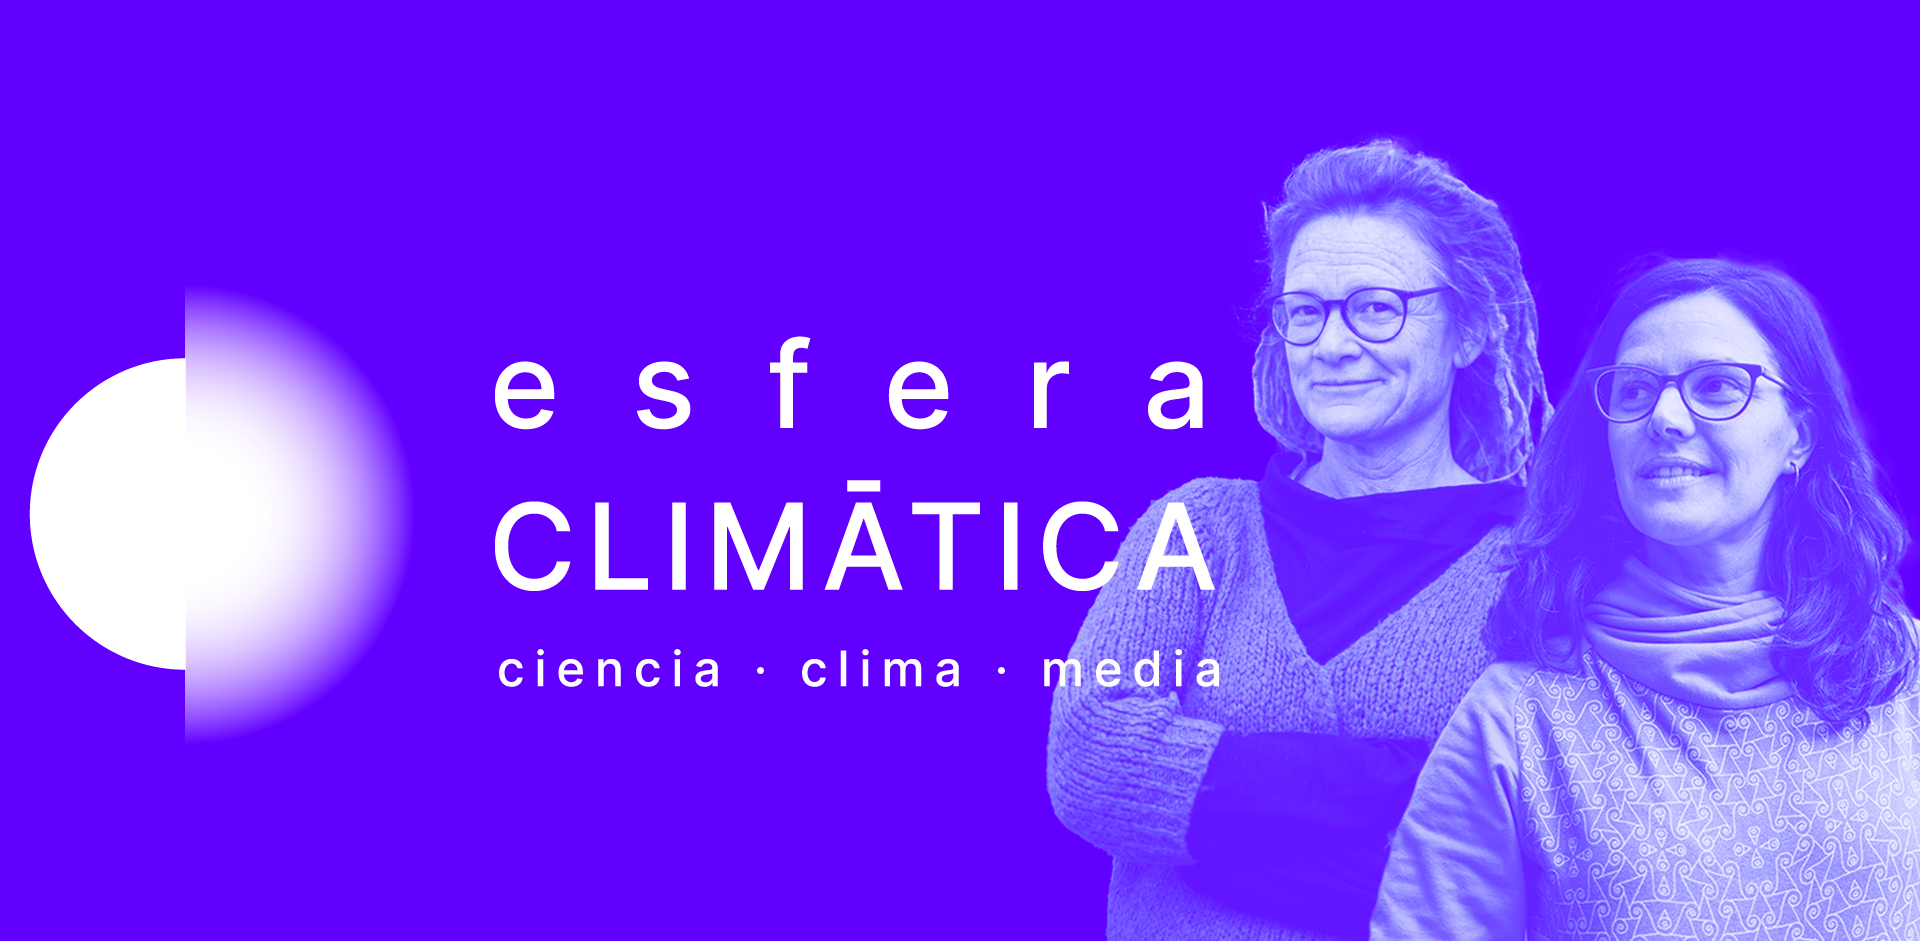 Neix Esfera Climàtica, un gran gabinet de comunicació i projecte pioner a Espanya que connecta a mitjans de comunicació i investigadores rellevants per a augmentar la cobertura mediàtica relacionada amb el clima a Espanya.